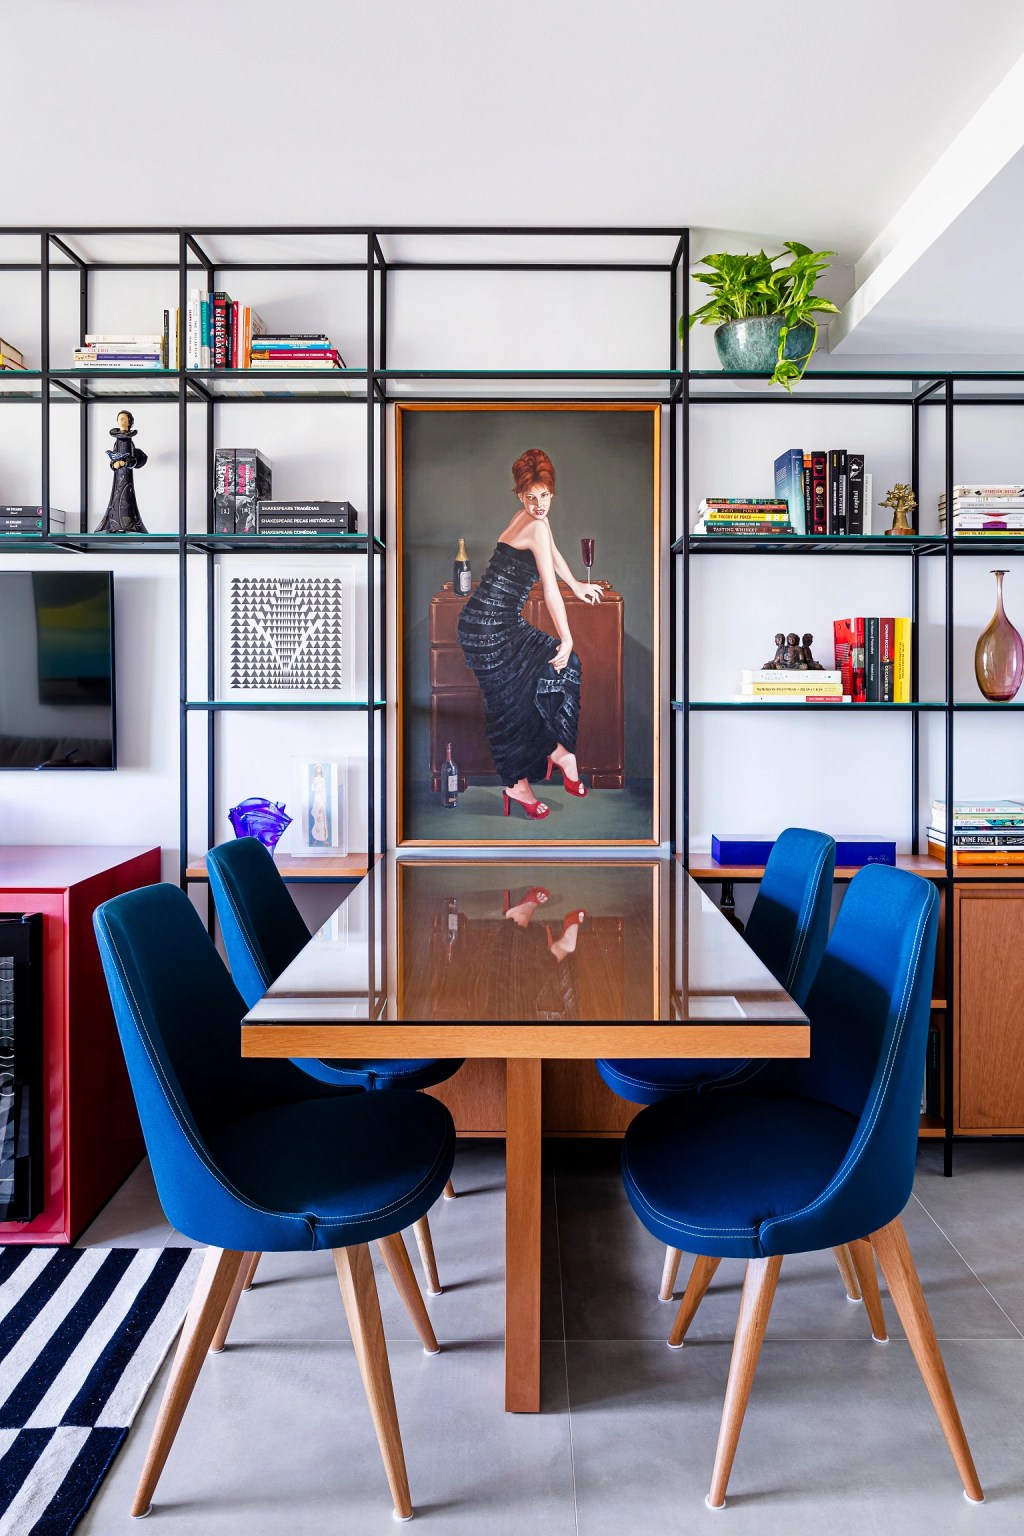 Loft de 45 m² ganha décor descolado baseado na coleção de arte do morador